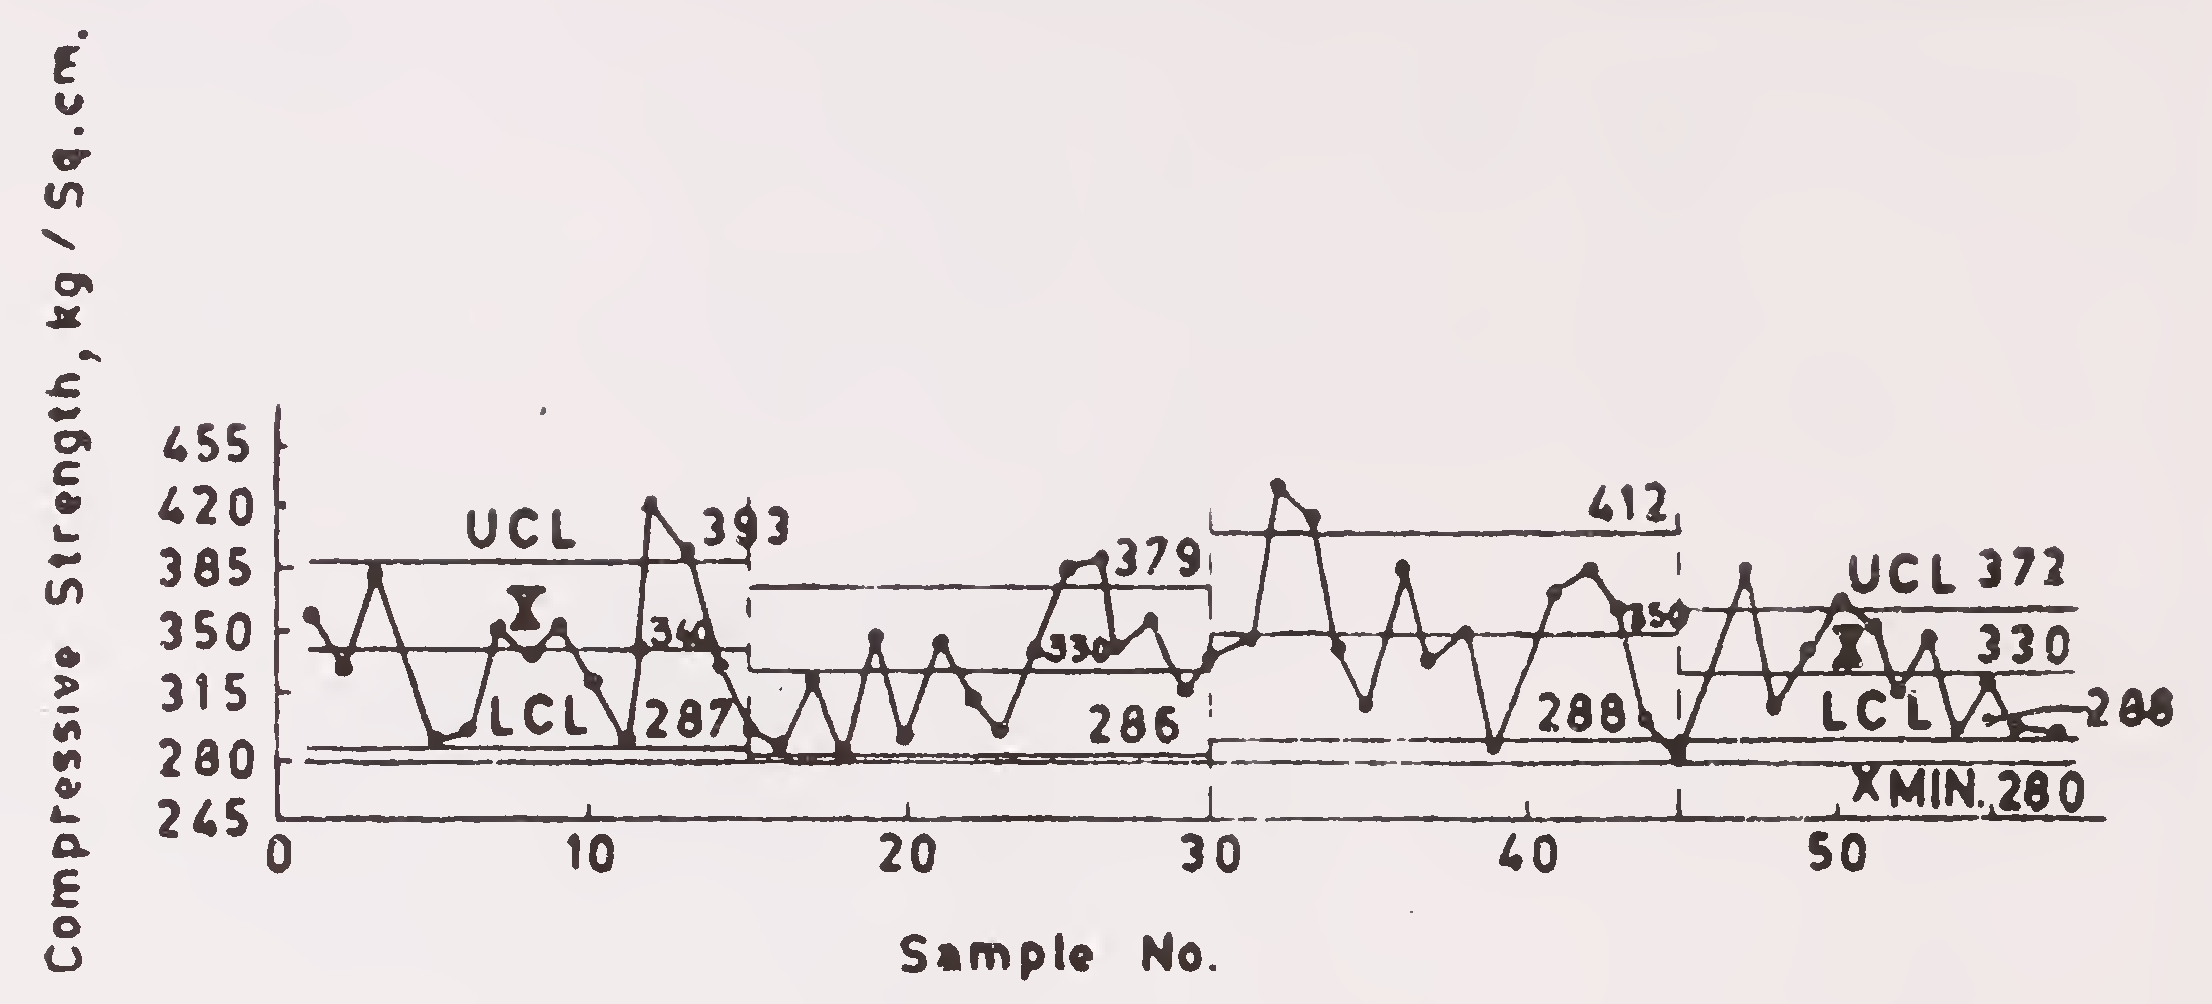 Fig. 6. బలం పరీక్ష డేటా కోసం ప్రోగ్రెస్ చార్ట్